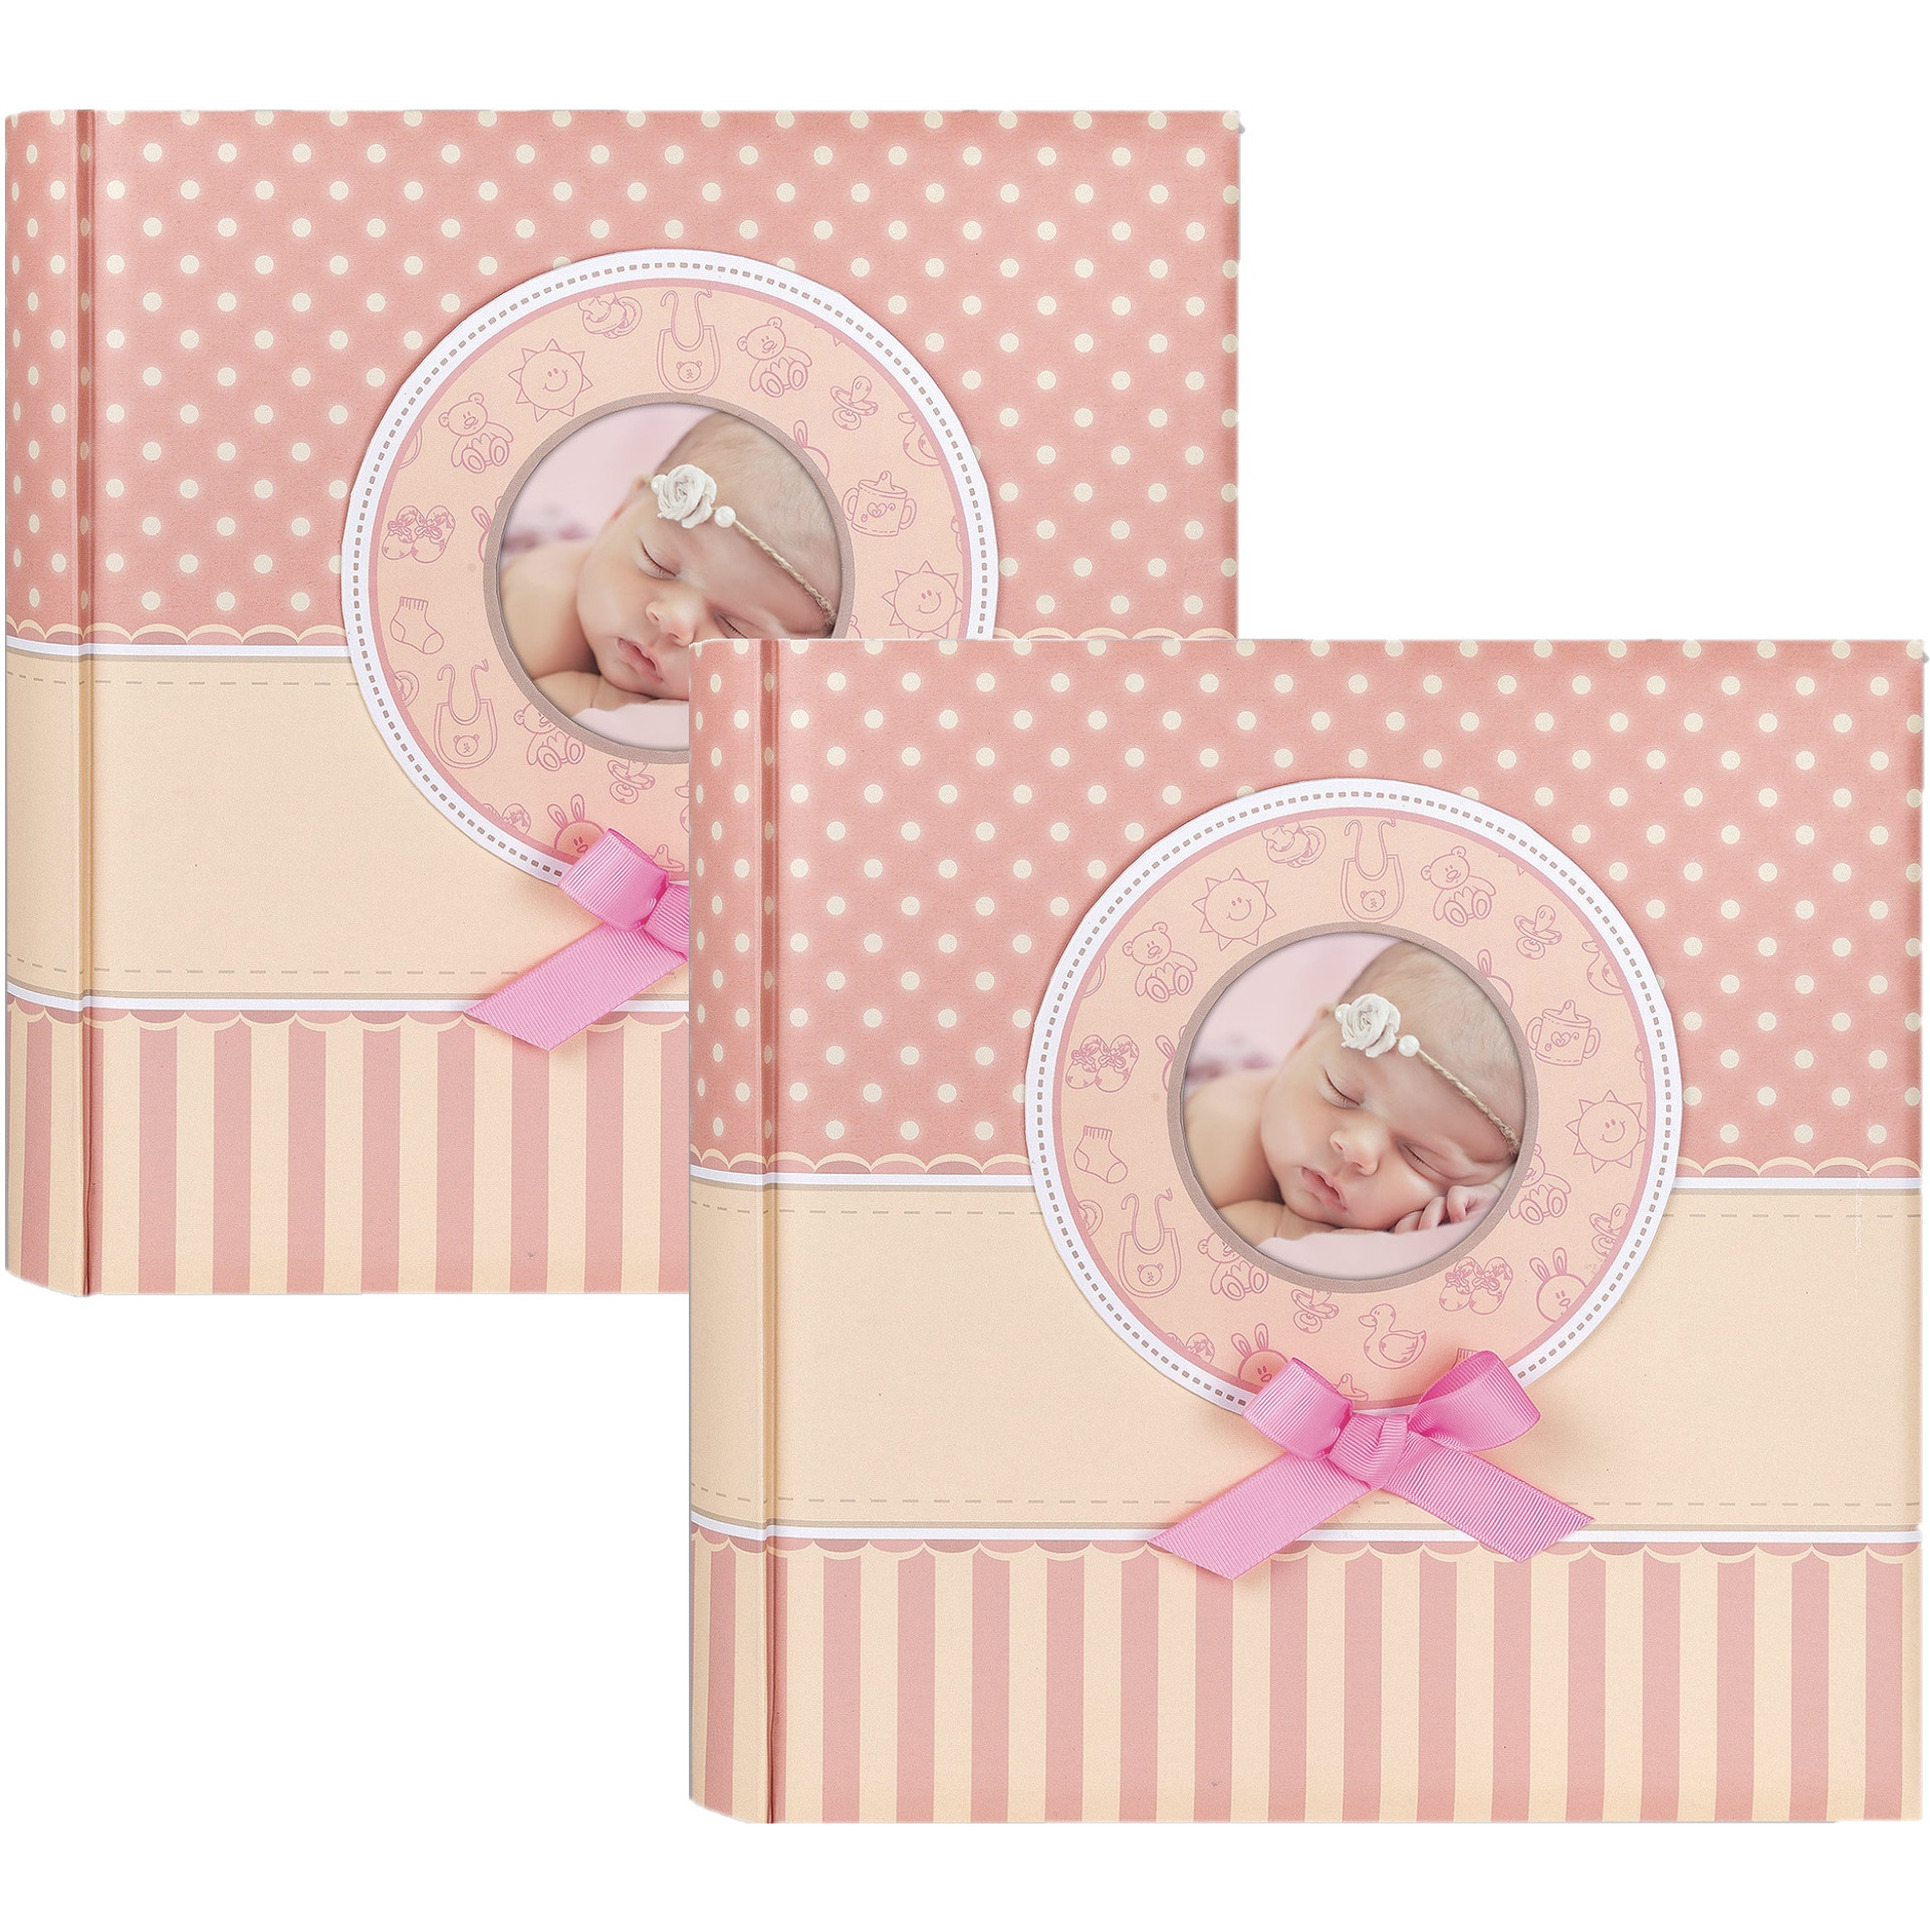 2x Fotoboek-fotoalbum Matilda baby meisje met 30 paginas roze 31 x 31 x 3,5 cm